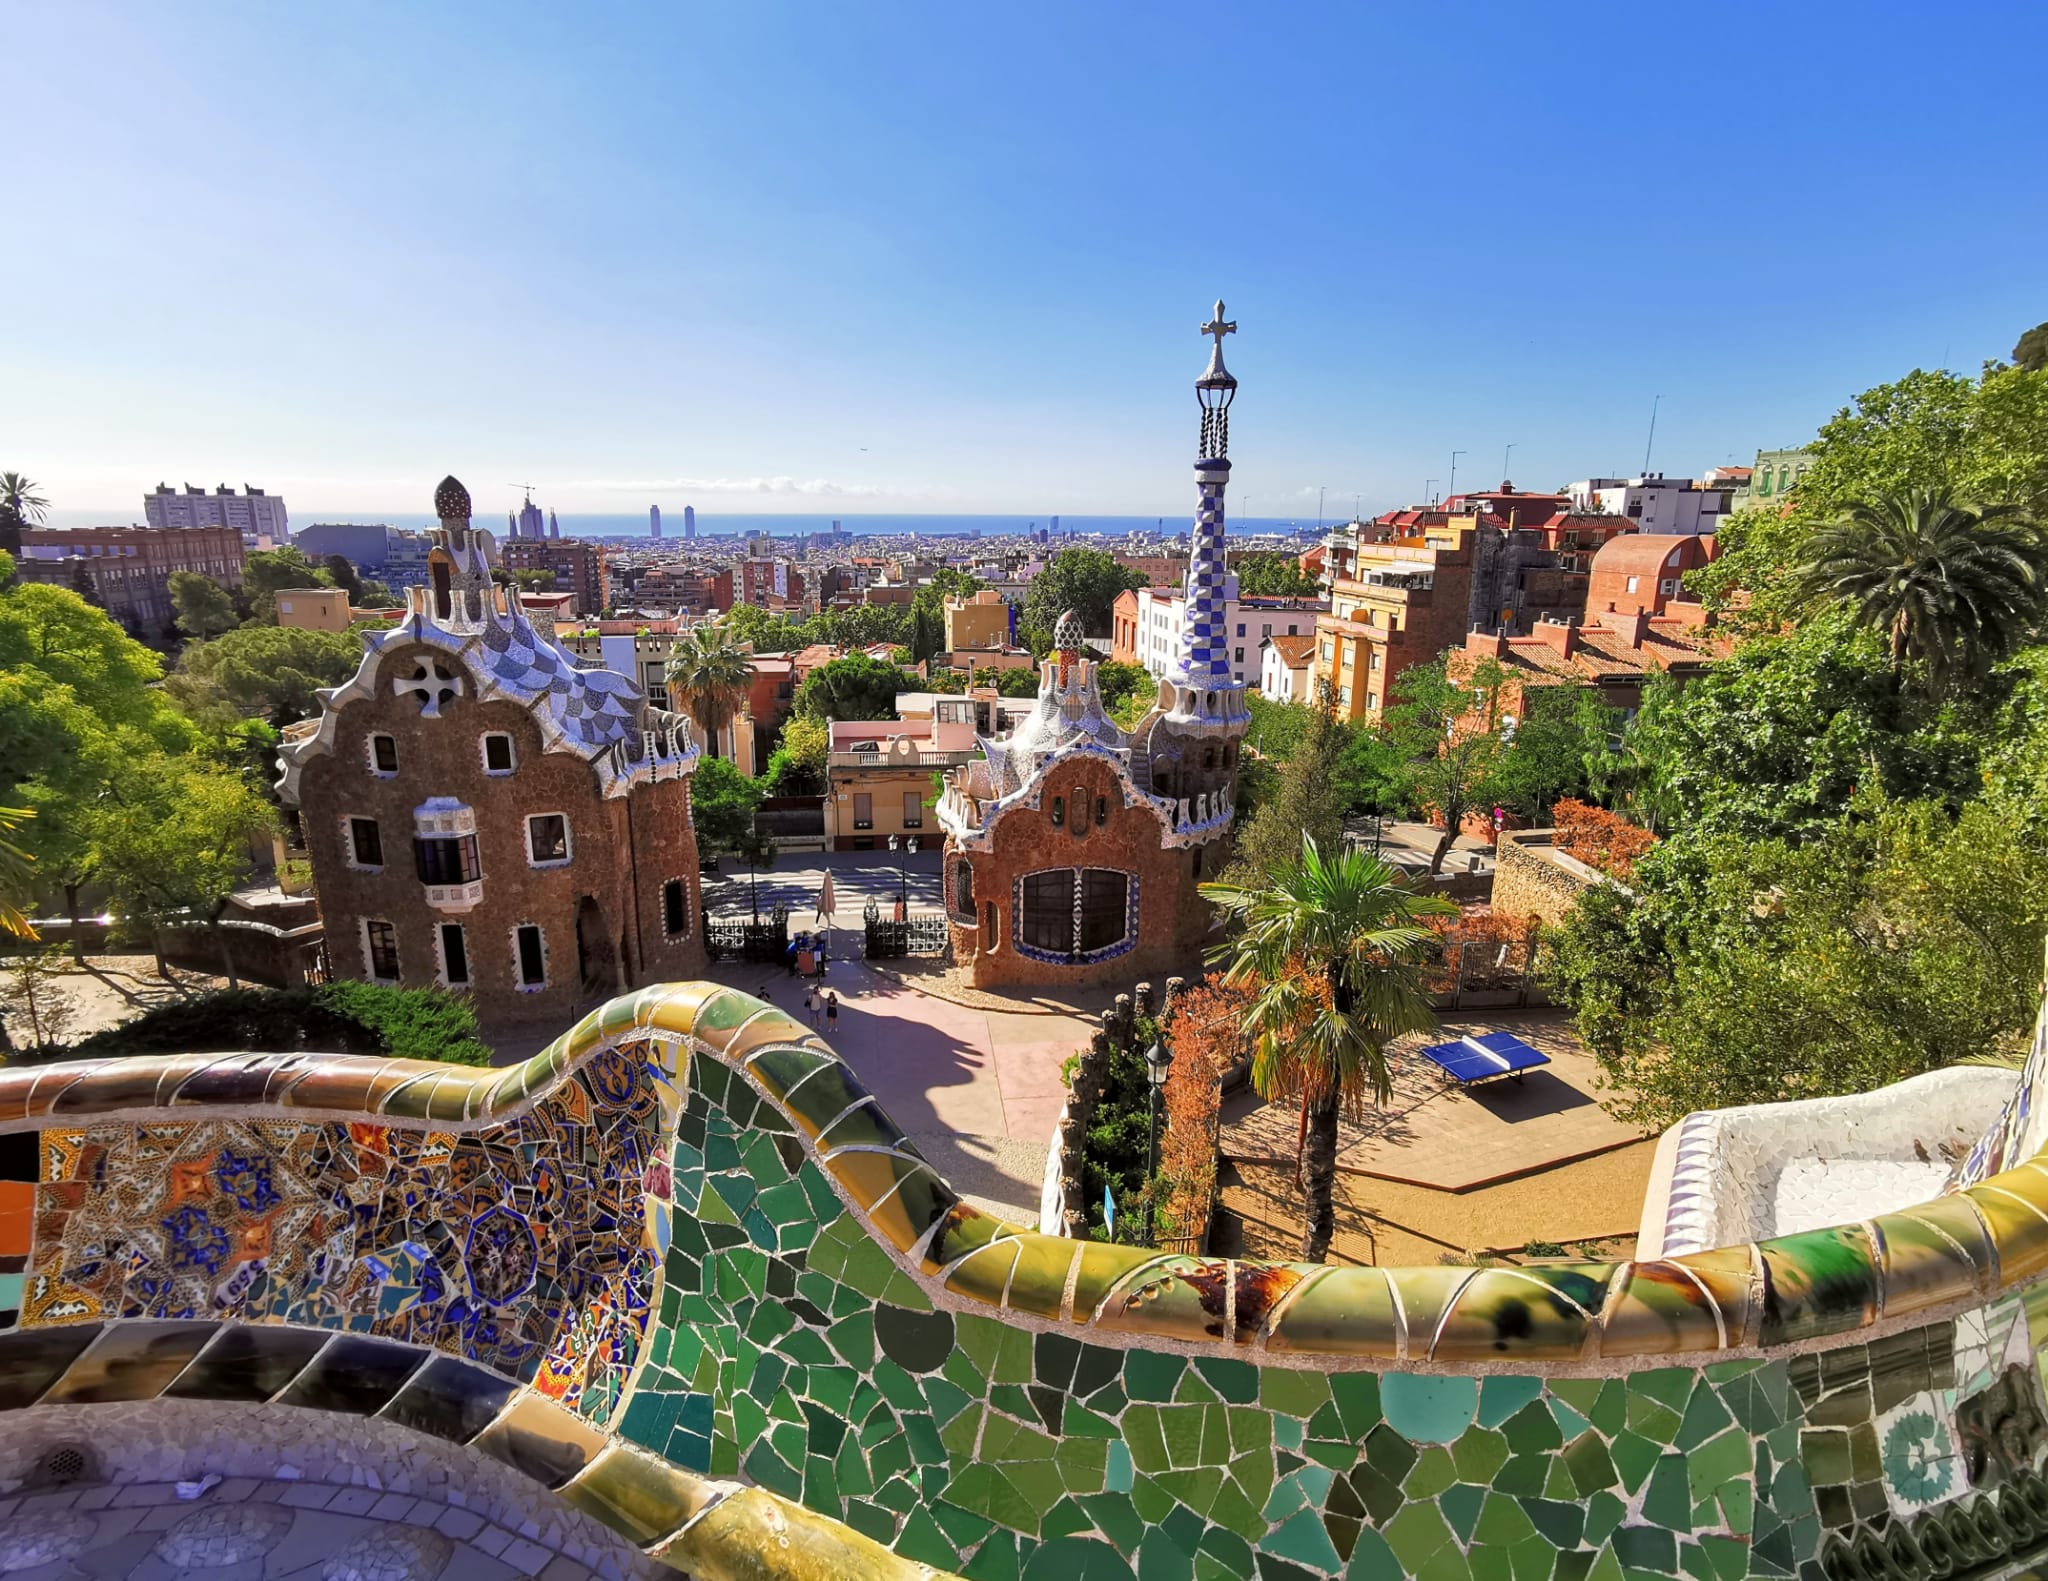 După Mallorca, și în Barcelona se vrea reducerea numărului de turiști